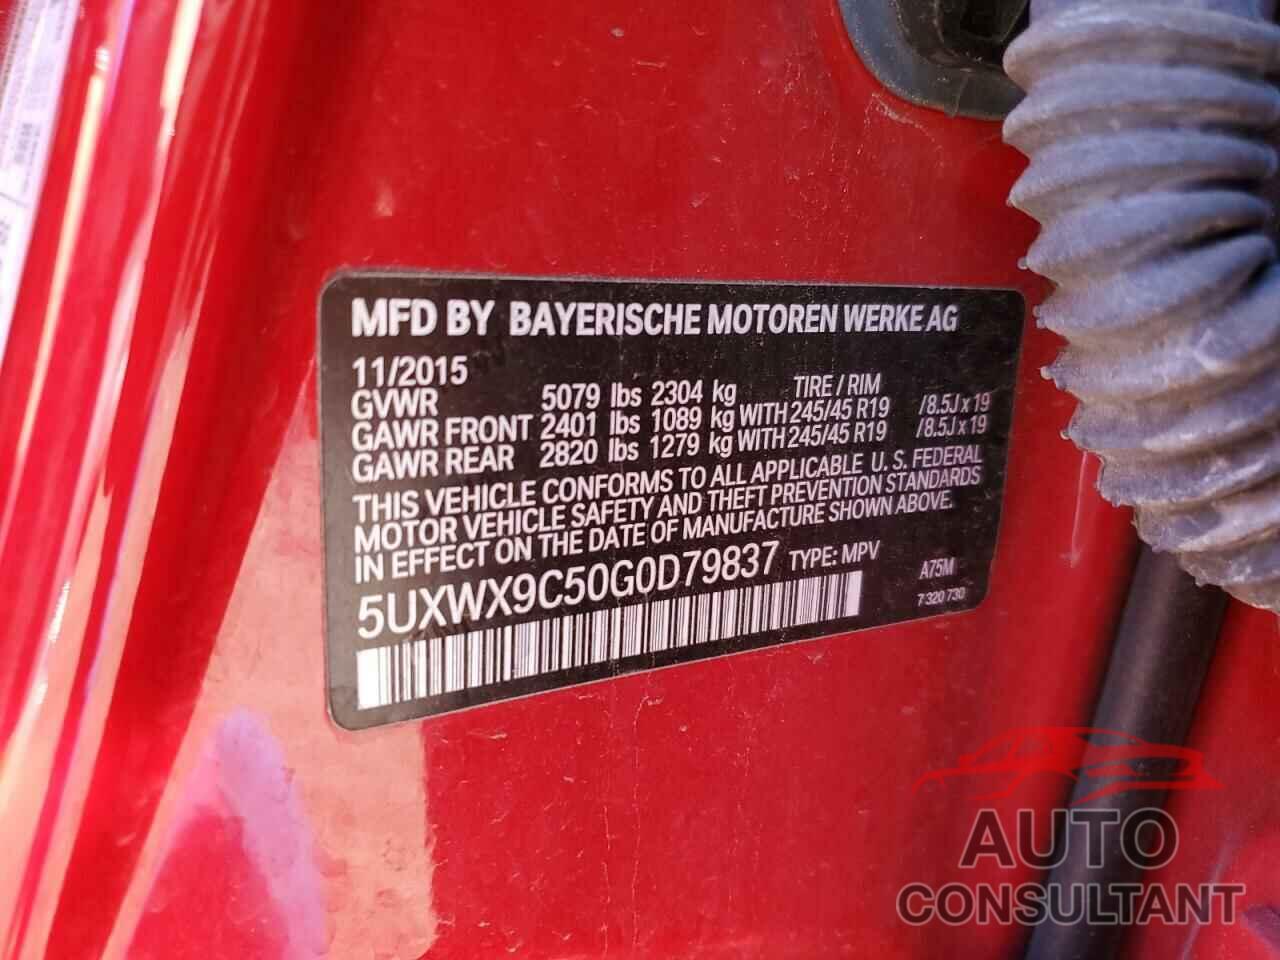 BMW X3 2016 - 5UXWX9C50G0D79837